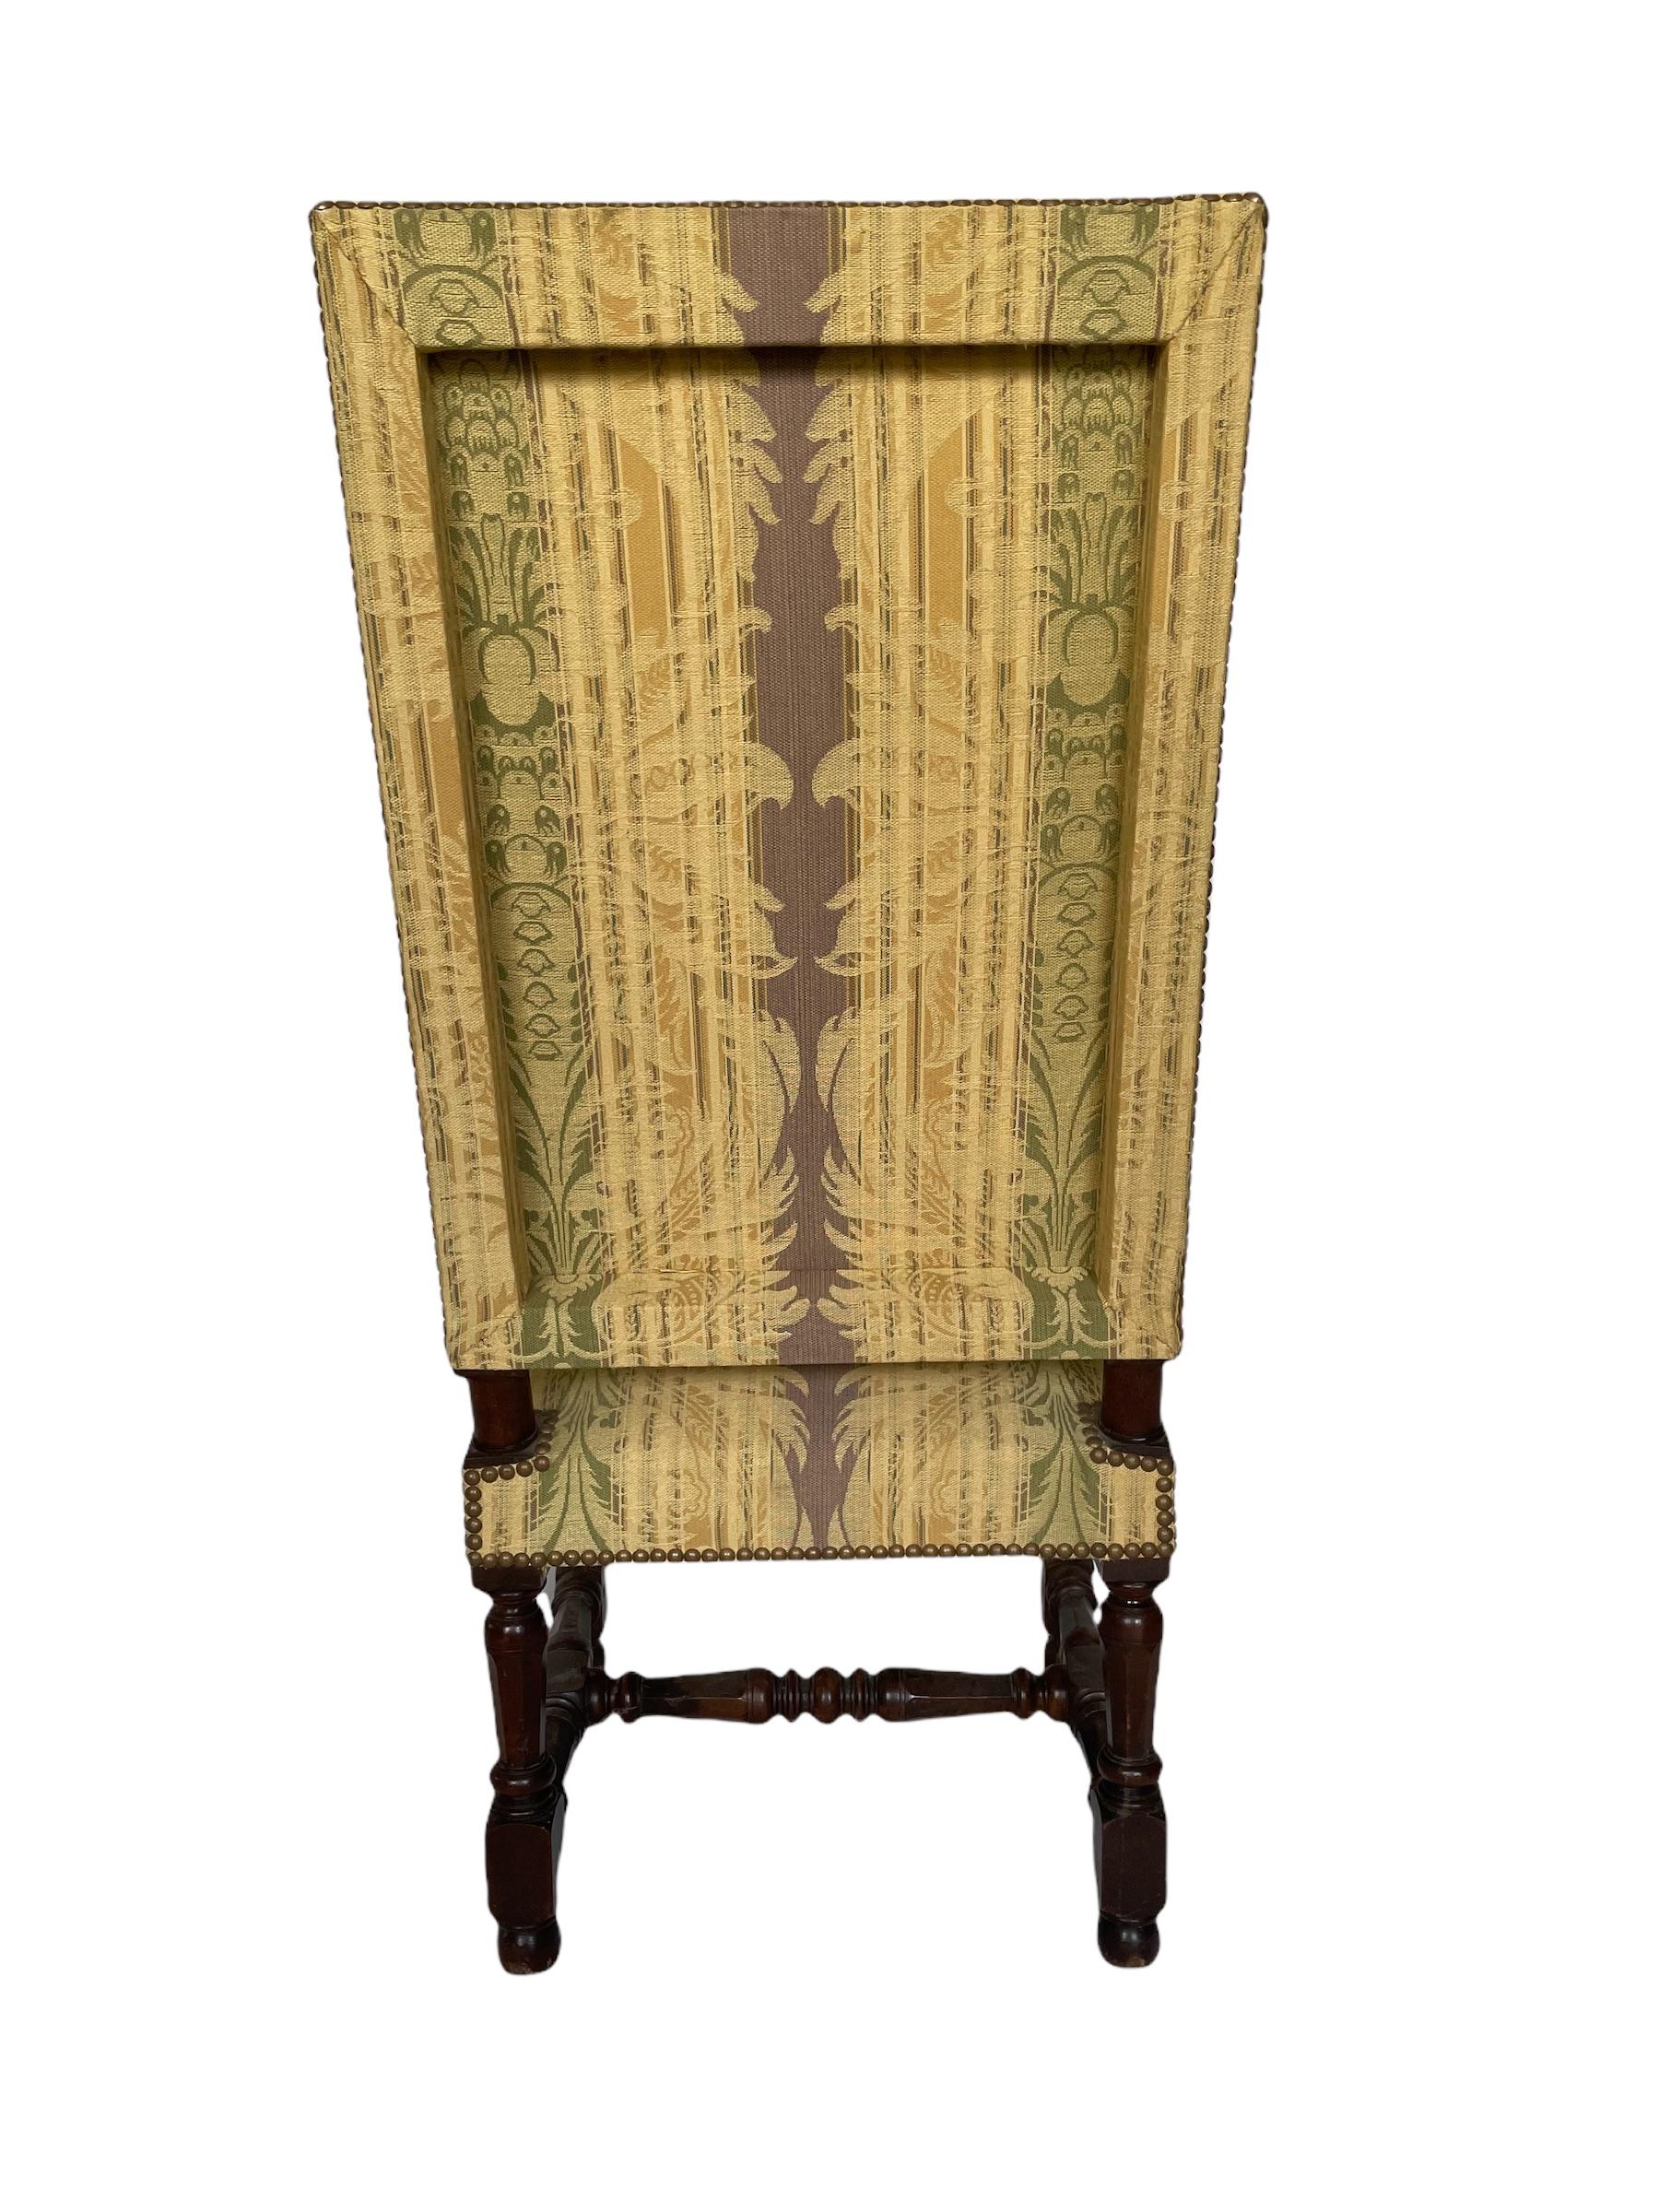 Schöner französischer Nussbaumstuhl aus dem 17. Jahrhundert, mit gedrechselten Beinen und gepolsterten Sitzen. Die Stuhllehne ist schön gemacht und offen in drei Teilen gearbeitet. Die gepolsterten Sitze sind in Senftönen gehalten und reich an